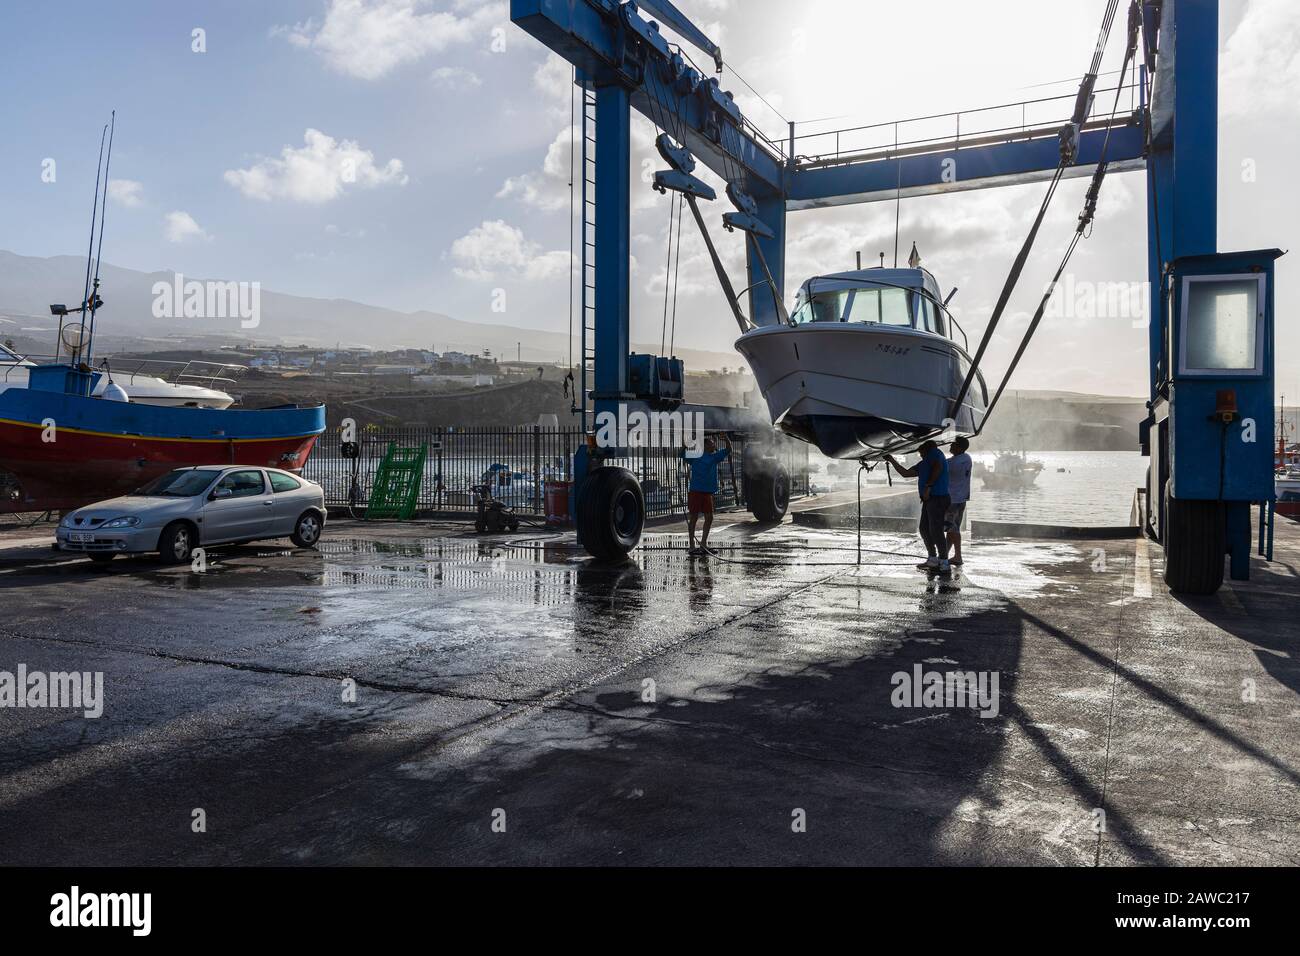 Nettoyage de la coque inférieure d'un bateau suspendu dans une grue de levage dans un quai sec au port de Playa San Juan, Tenerife, îles Canaries, Espagne Banque D'Images